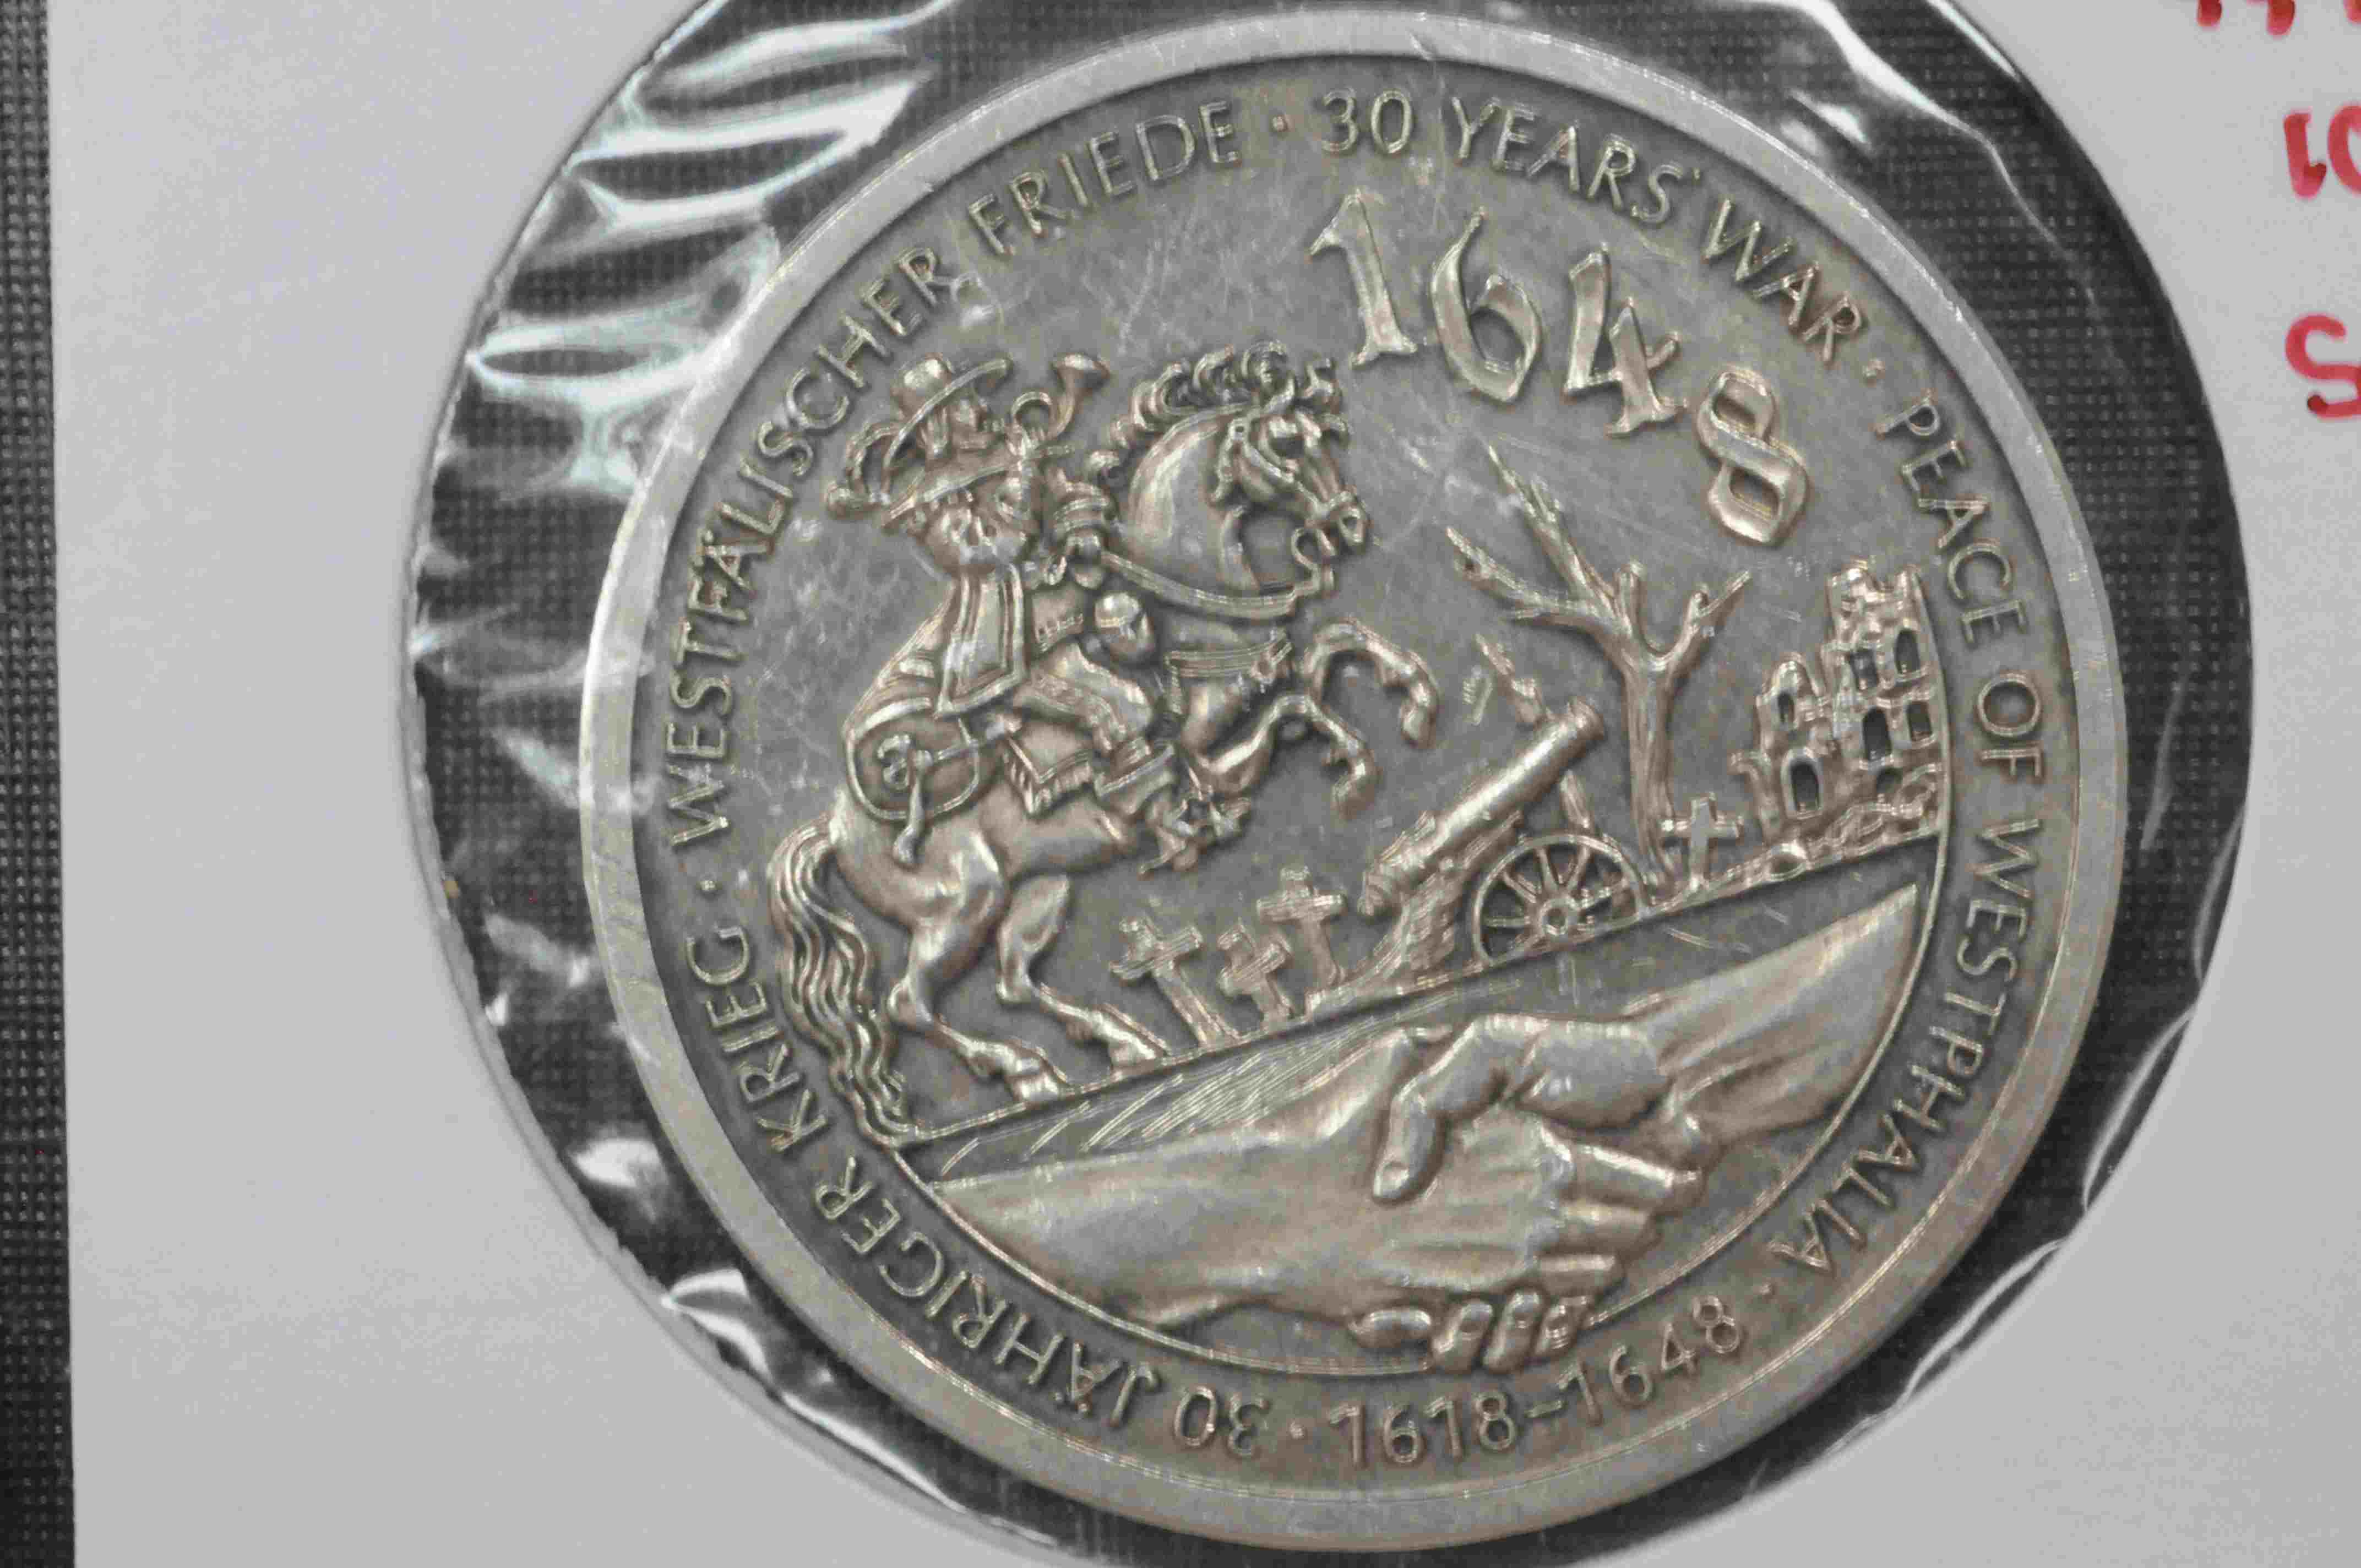 Tysk jub medalje Minne om 30 års krigen 999/1000 sølv kv0